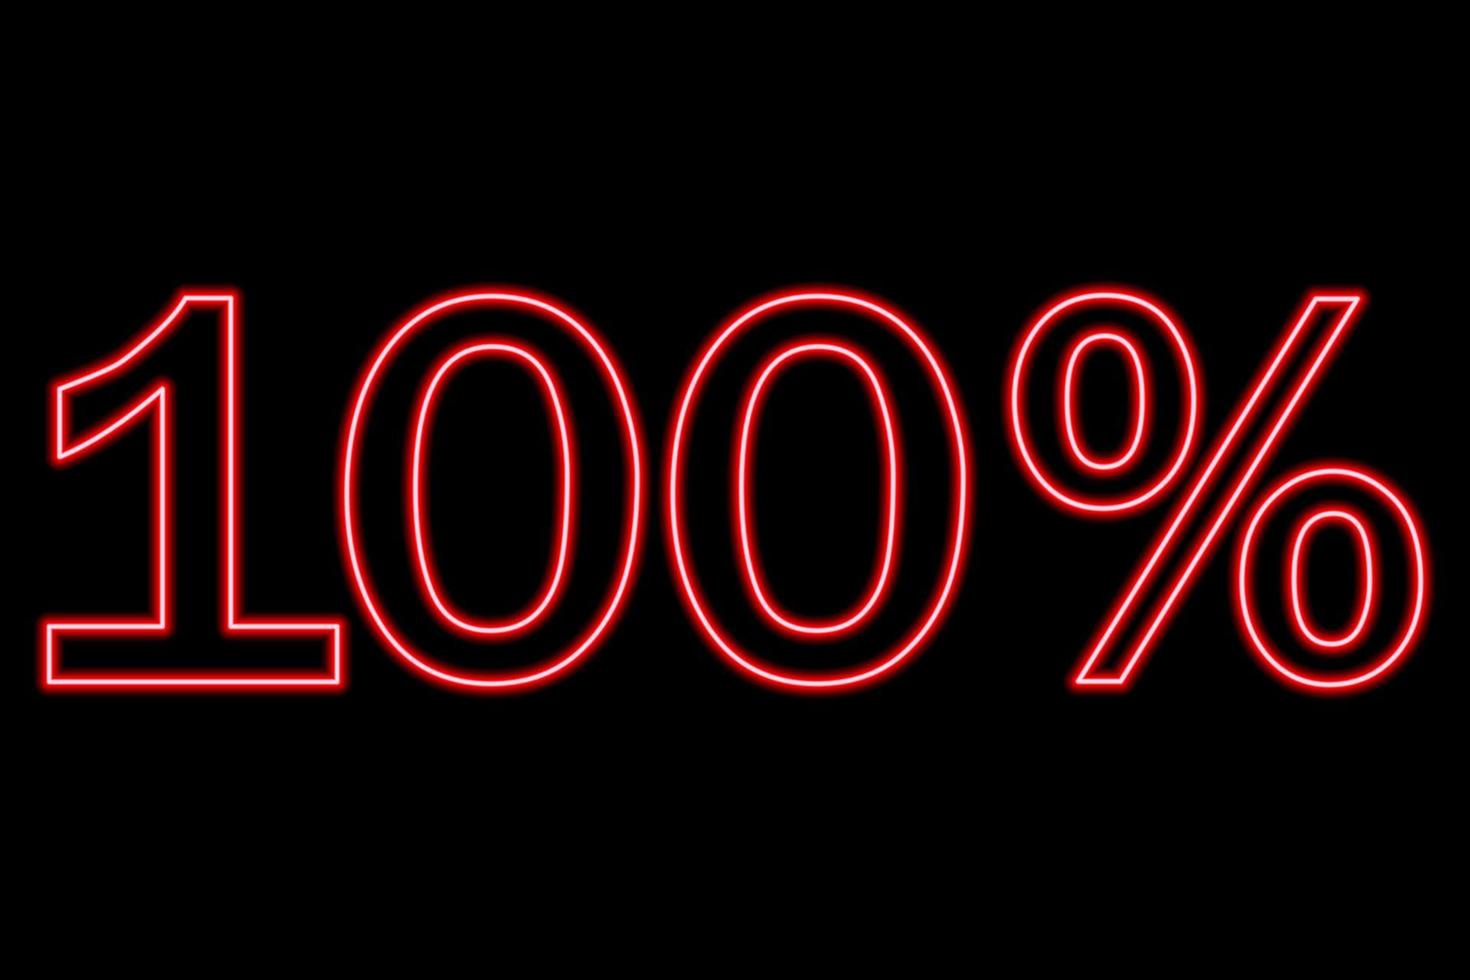 100 por cento de inscrição em um fundo preto. linha vermelha em estilo neon. vetor